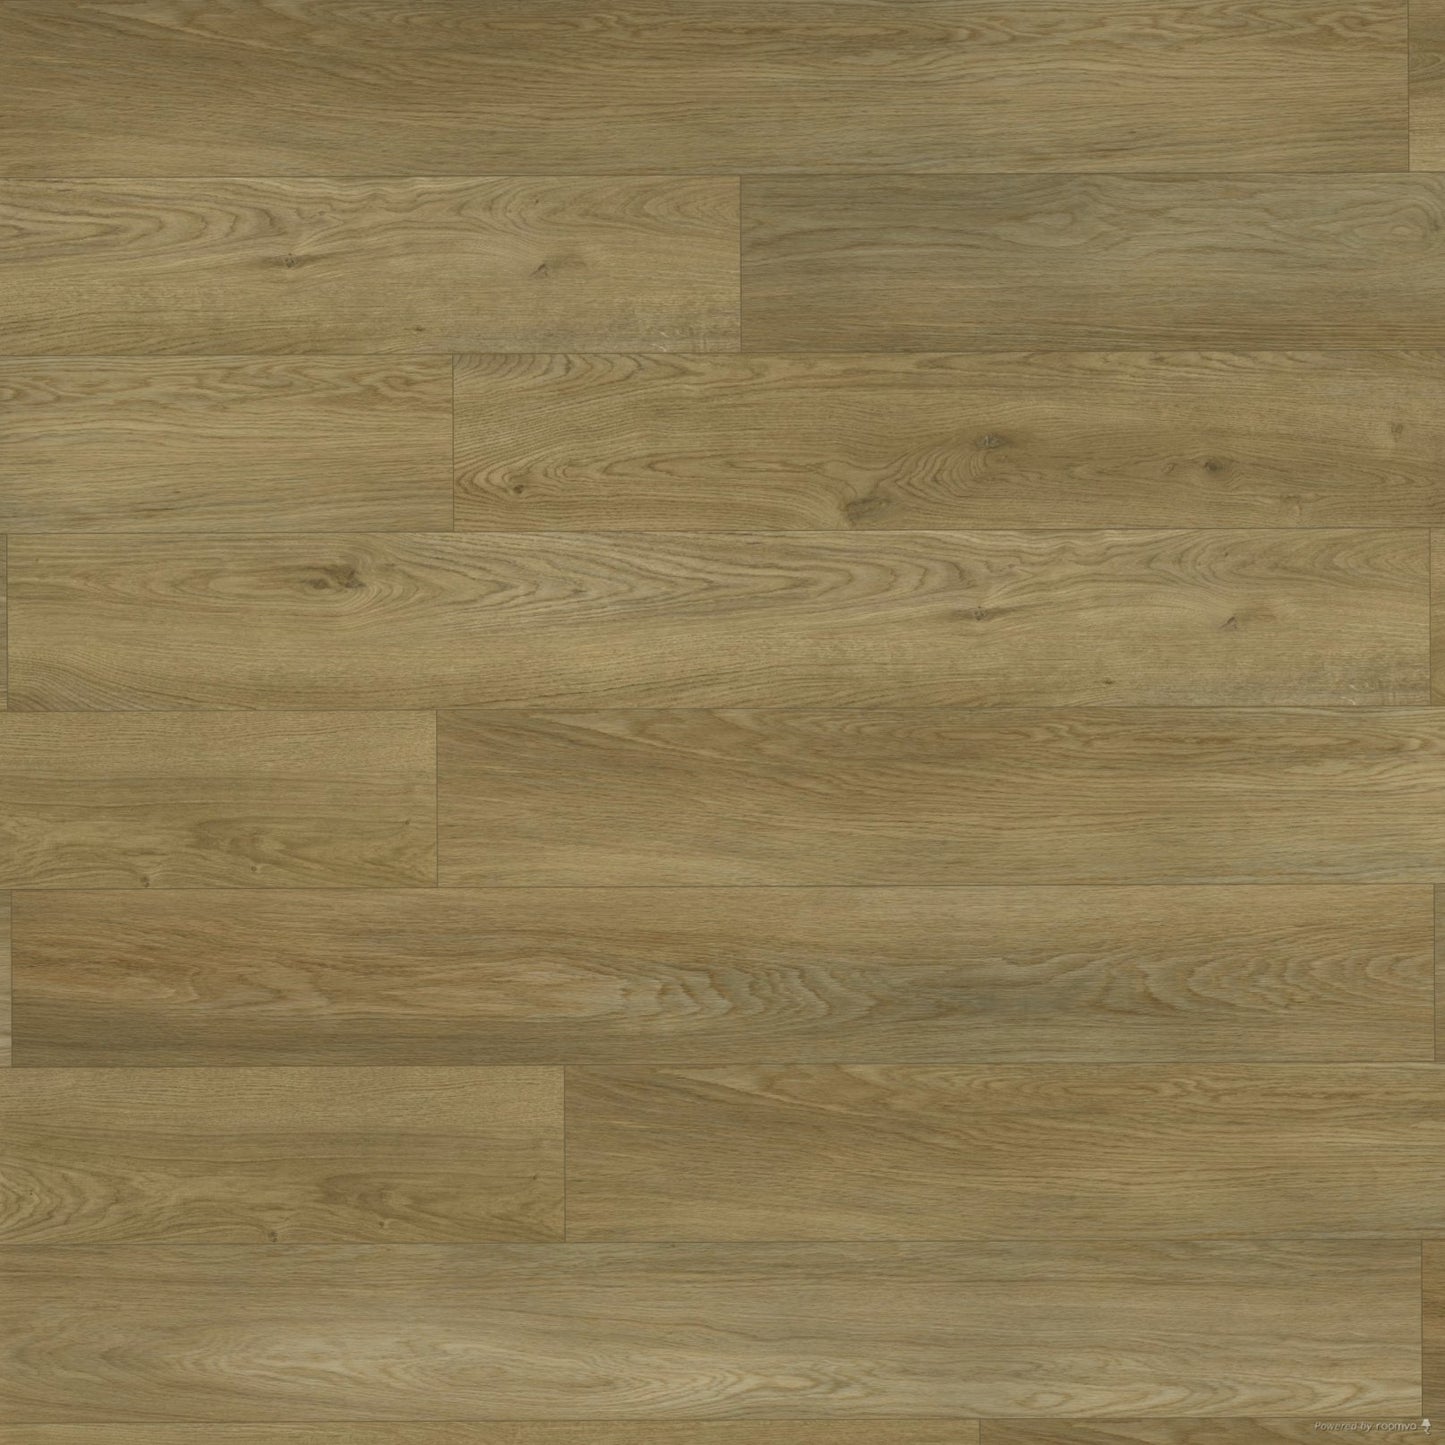 Becki Owens Elite Golden Hewn Stoneform luxury flooring plank swatch